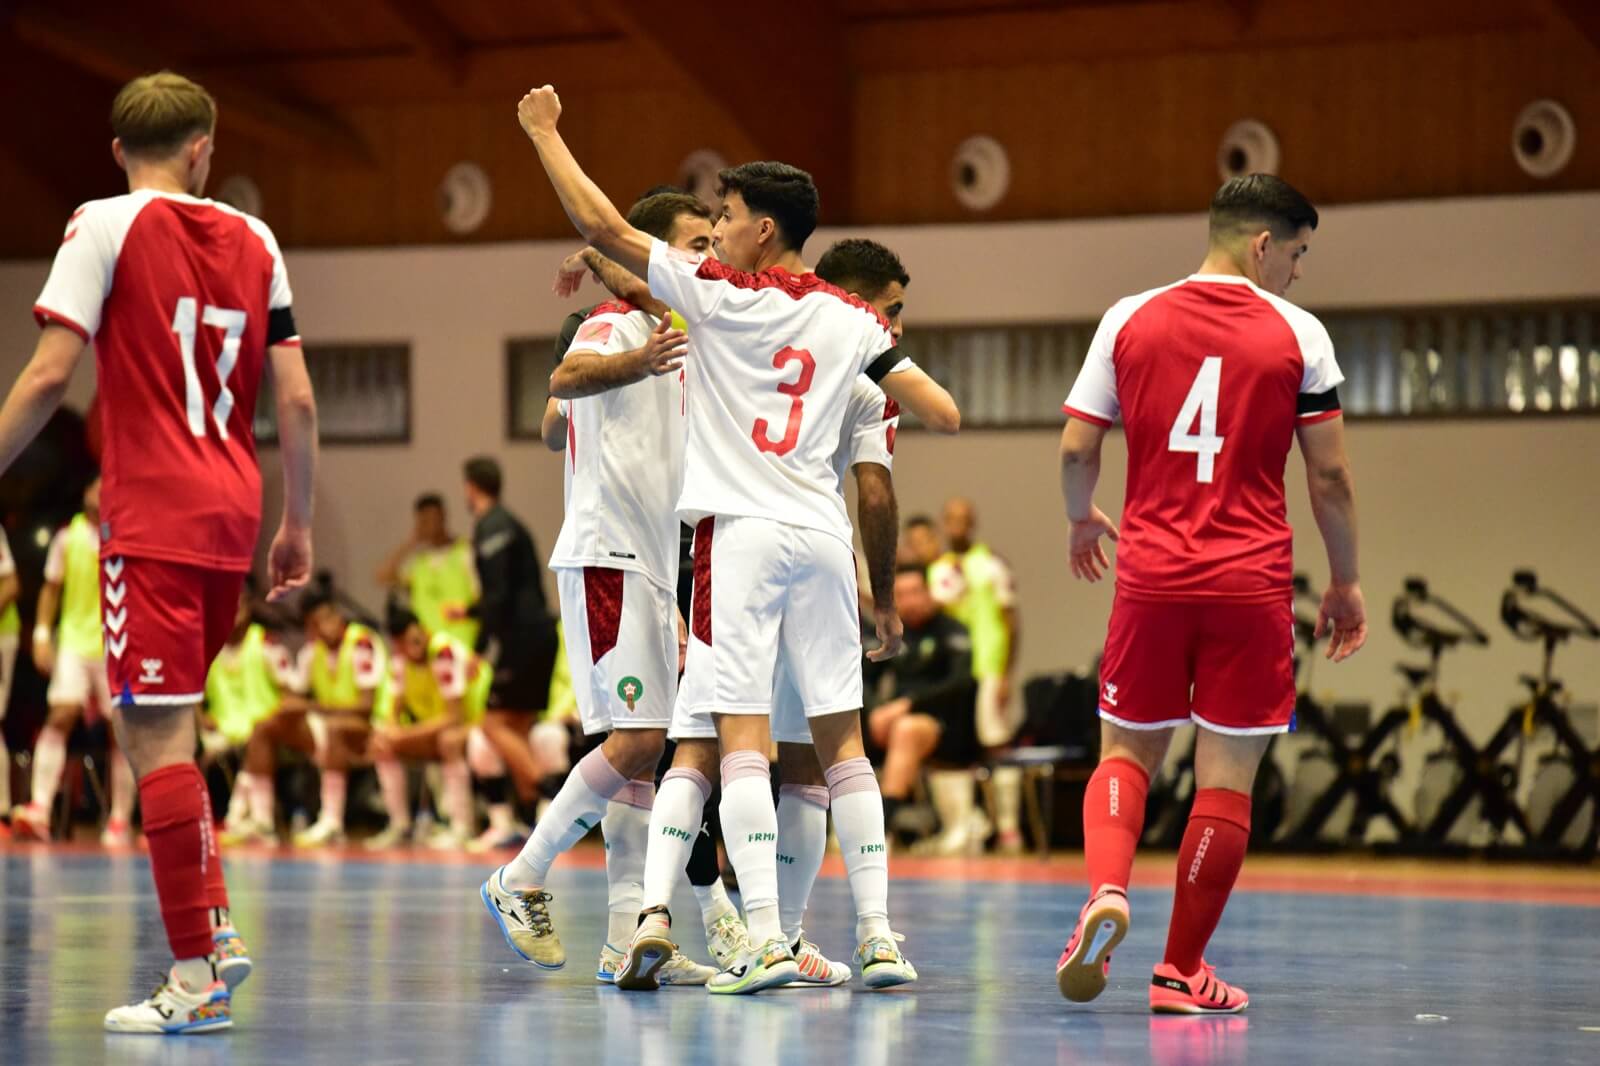 Match amical de futsal : très large victoire du Maroc face au Danemark (8-1)